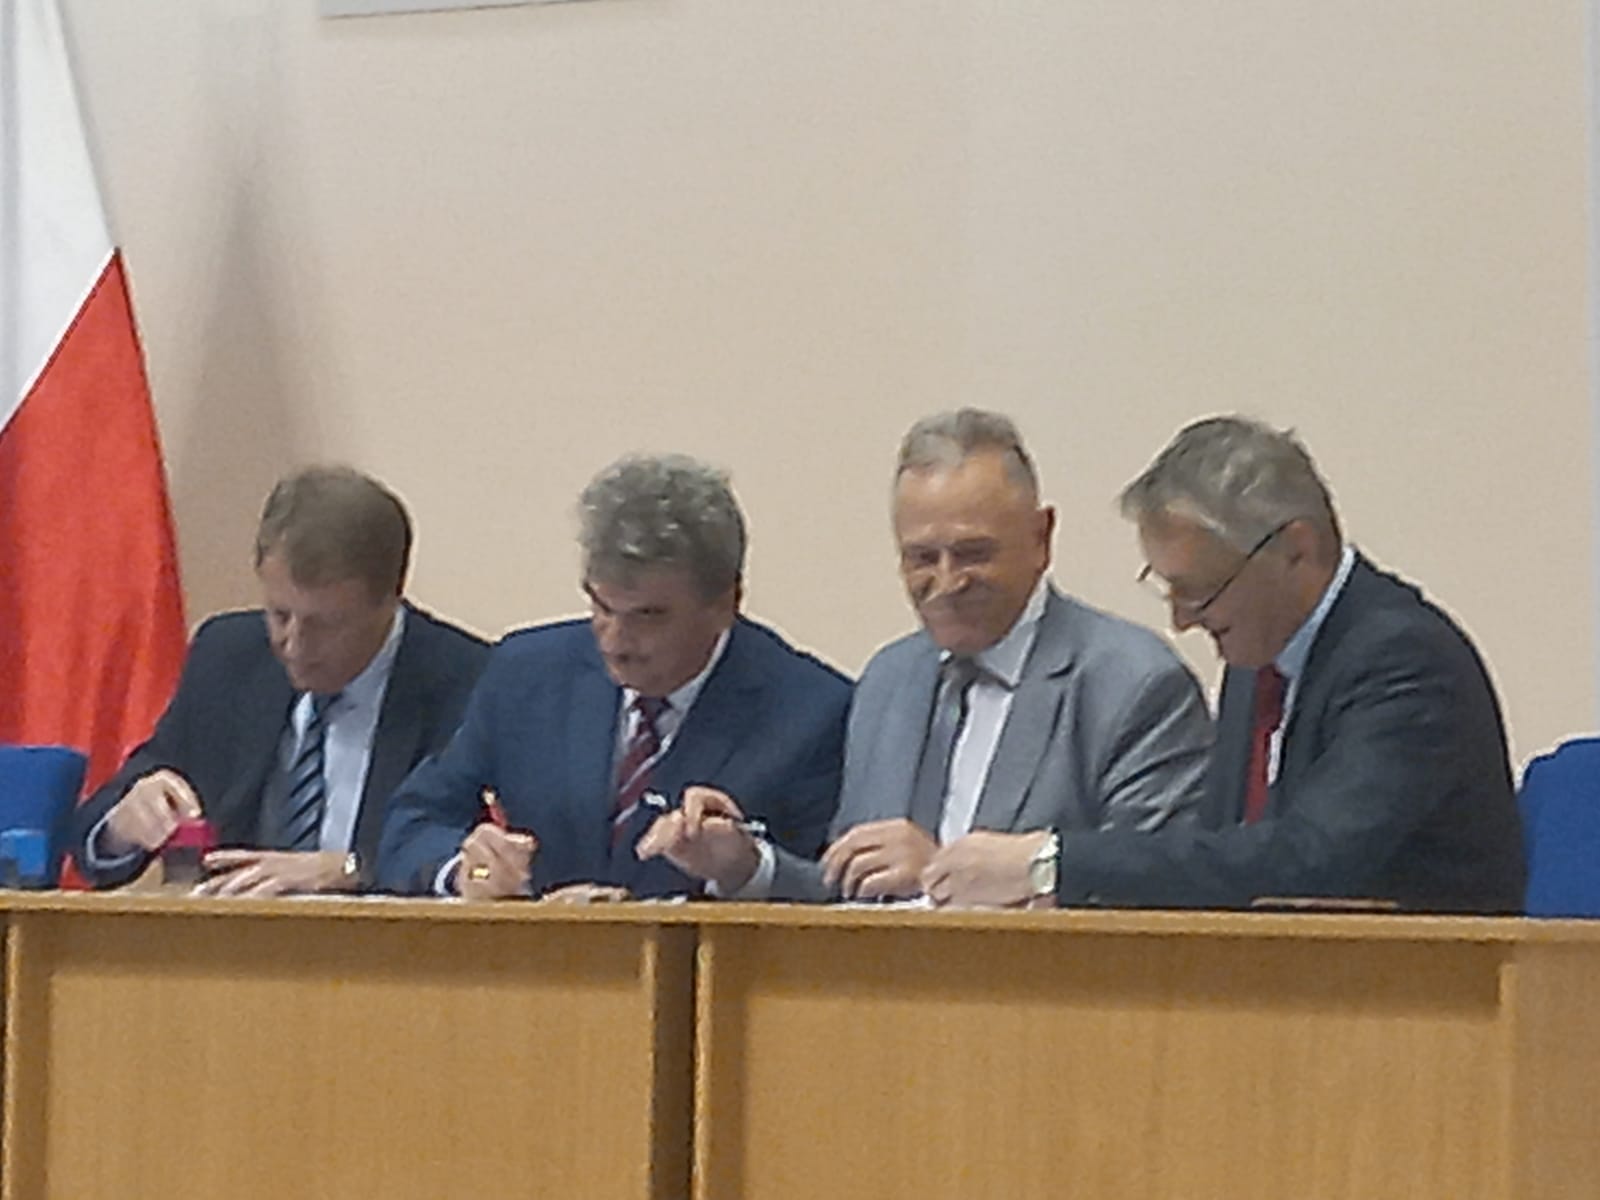 Podpisanie umowy o dofinansowanie, od lewej Skarbnik Artur Polniak, Wicestarosta Stanisław Klimczak, Starosta Jerzy Kolarz, Wojewoda Świętokrzyski Zbigniew Koniusz